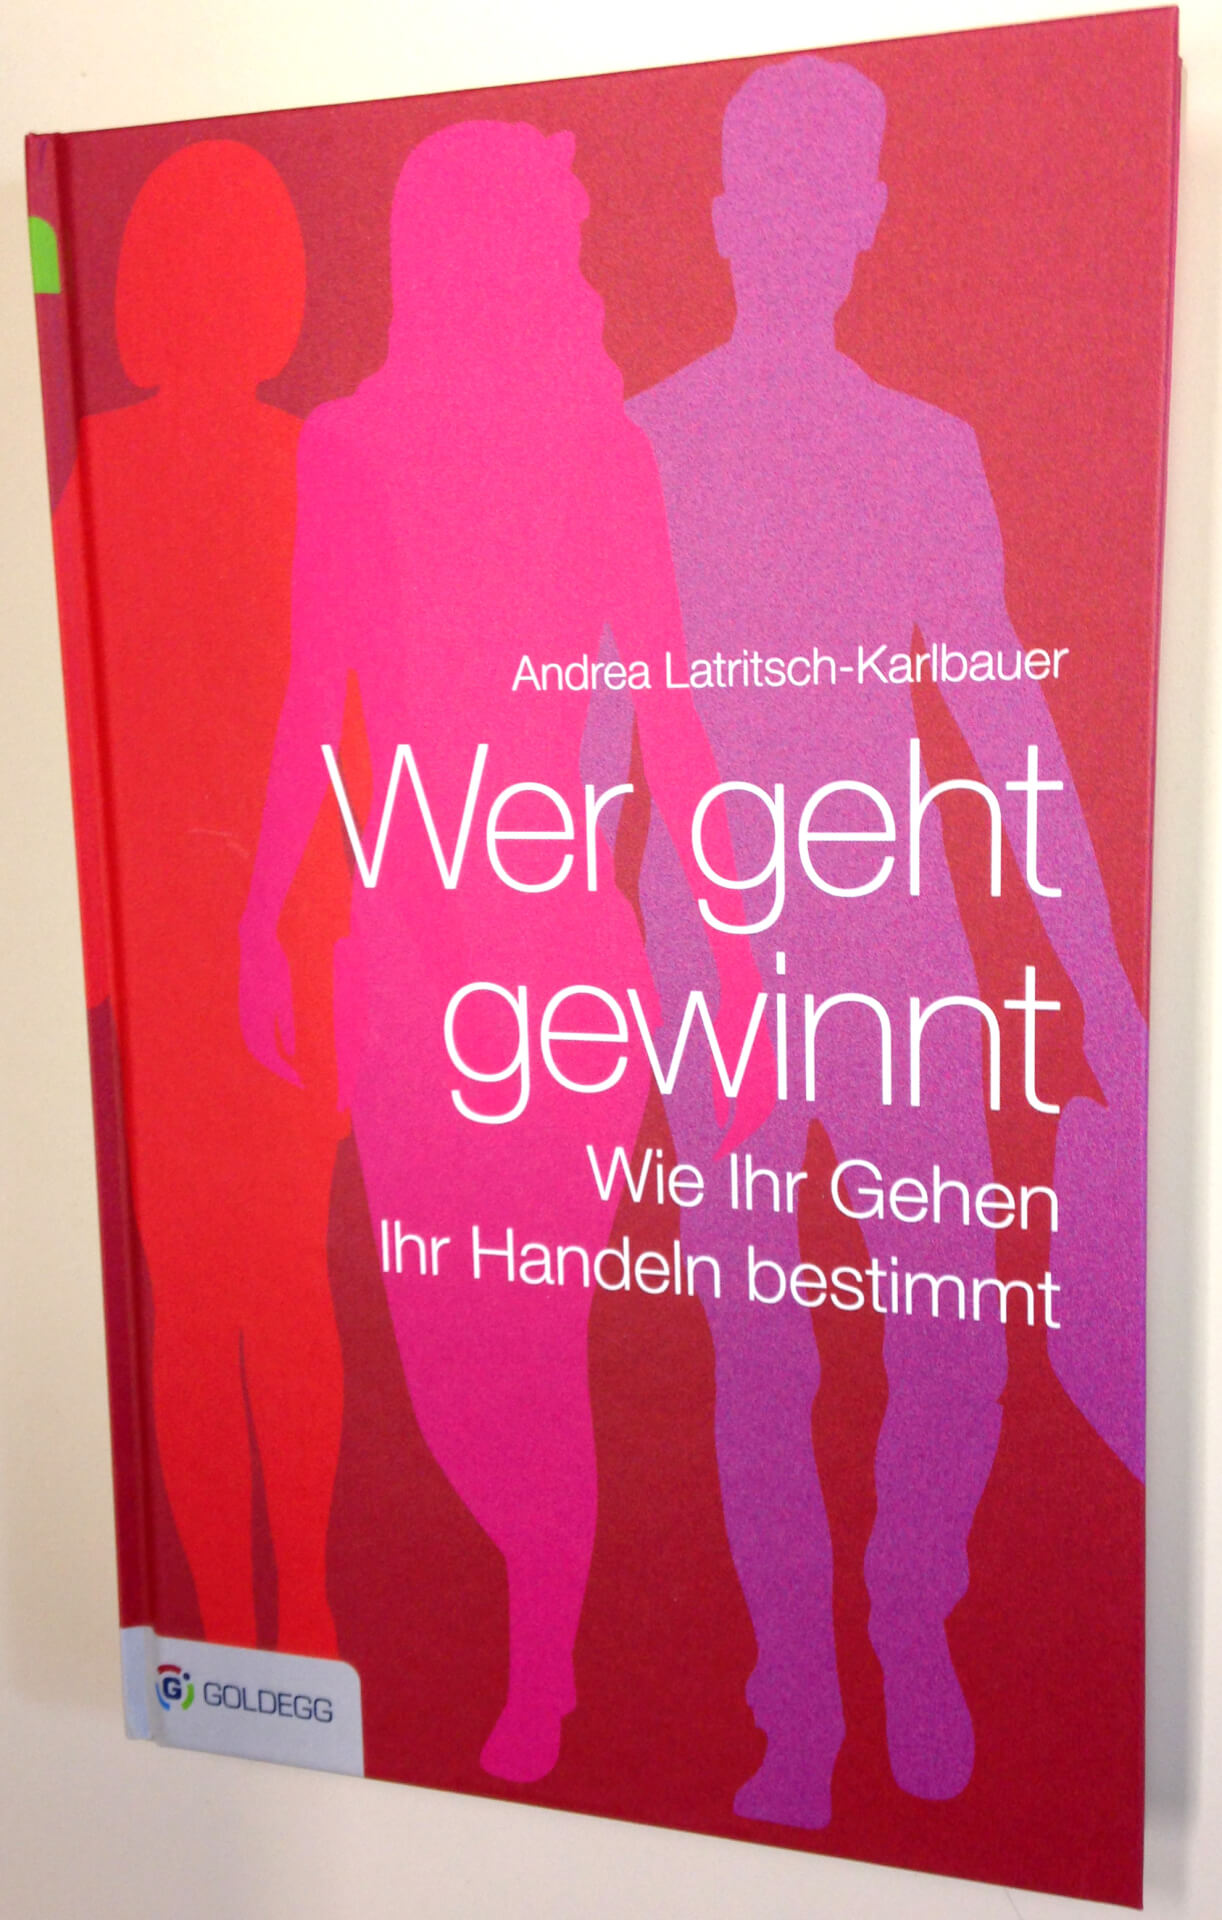 Ein Buch mit dem Titel "Wer gewinnt - wie eure Stimme euer Handeln bestimmt" von Andrea Latritsch-Karlbauer mit einem Cover mit Silhouetten von